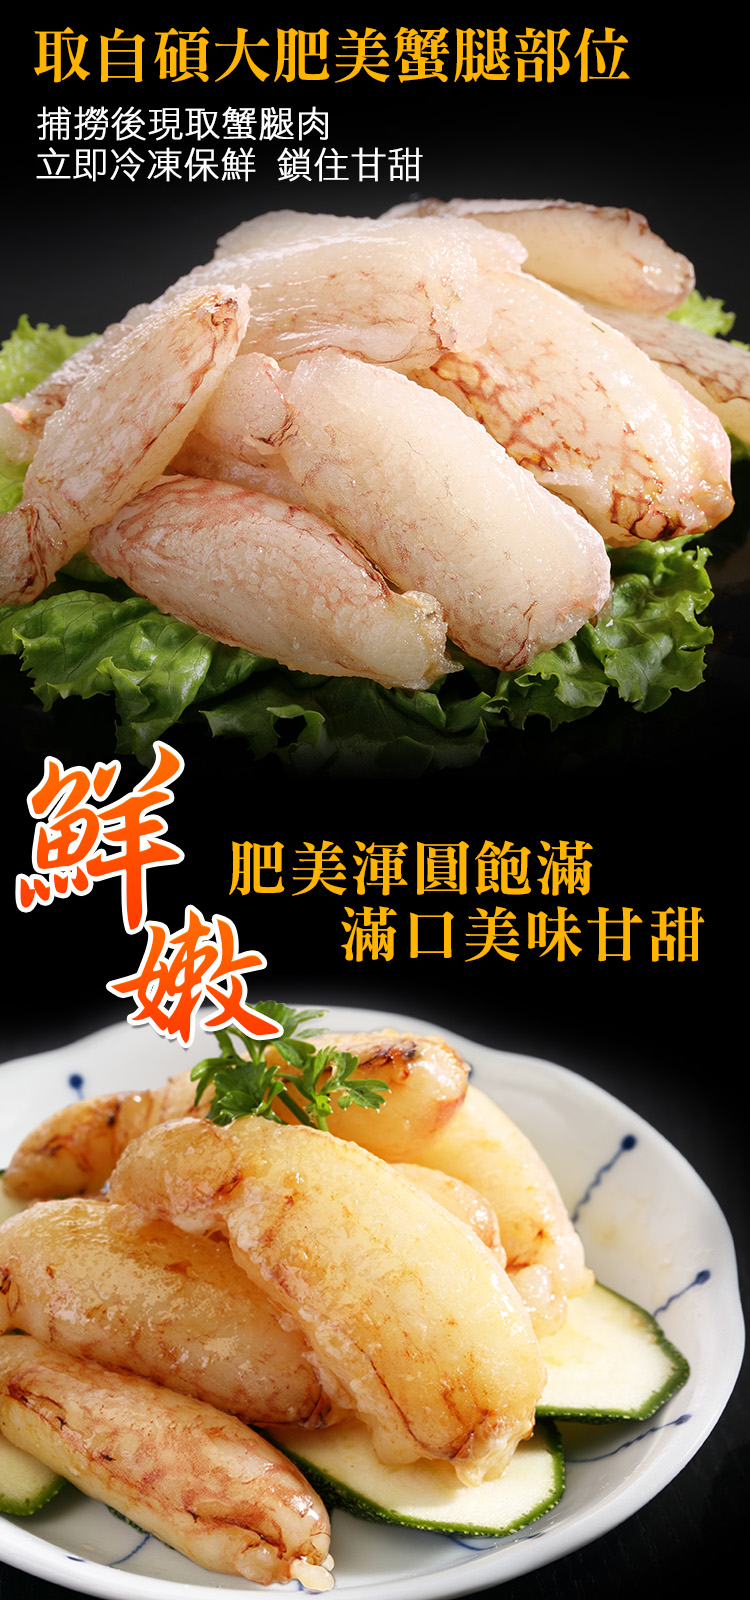 【海鮮王】極鮮肥美蟳管肉 3盒組(130g±10%/盒)